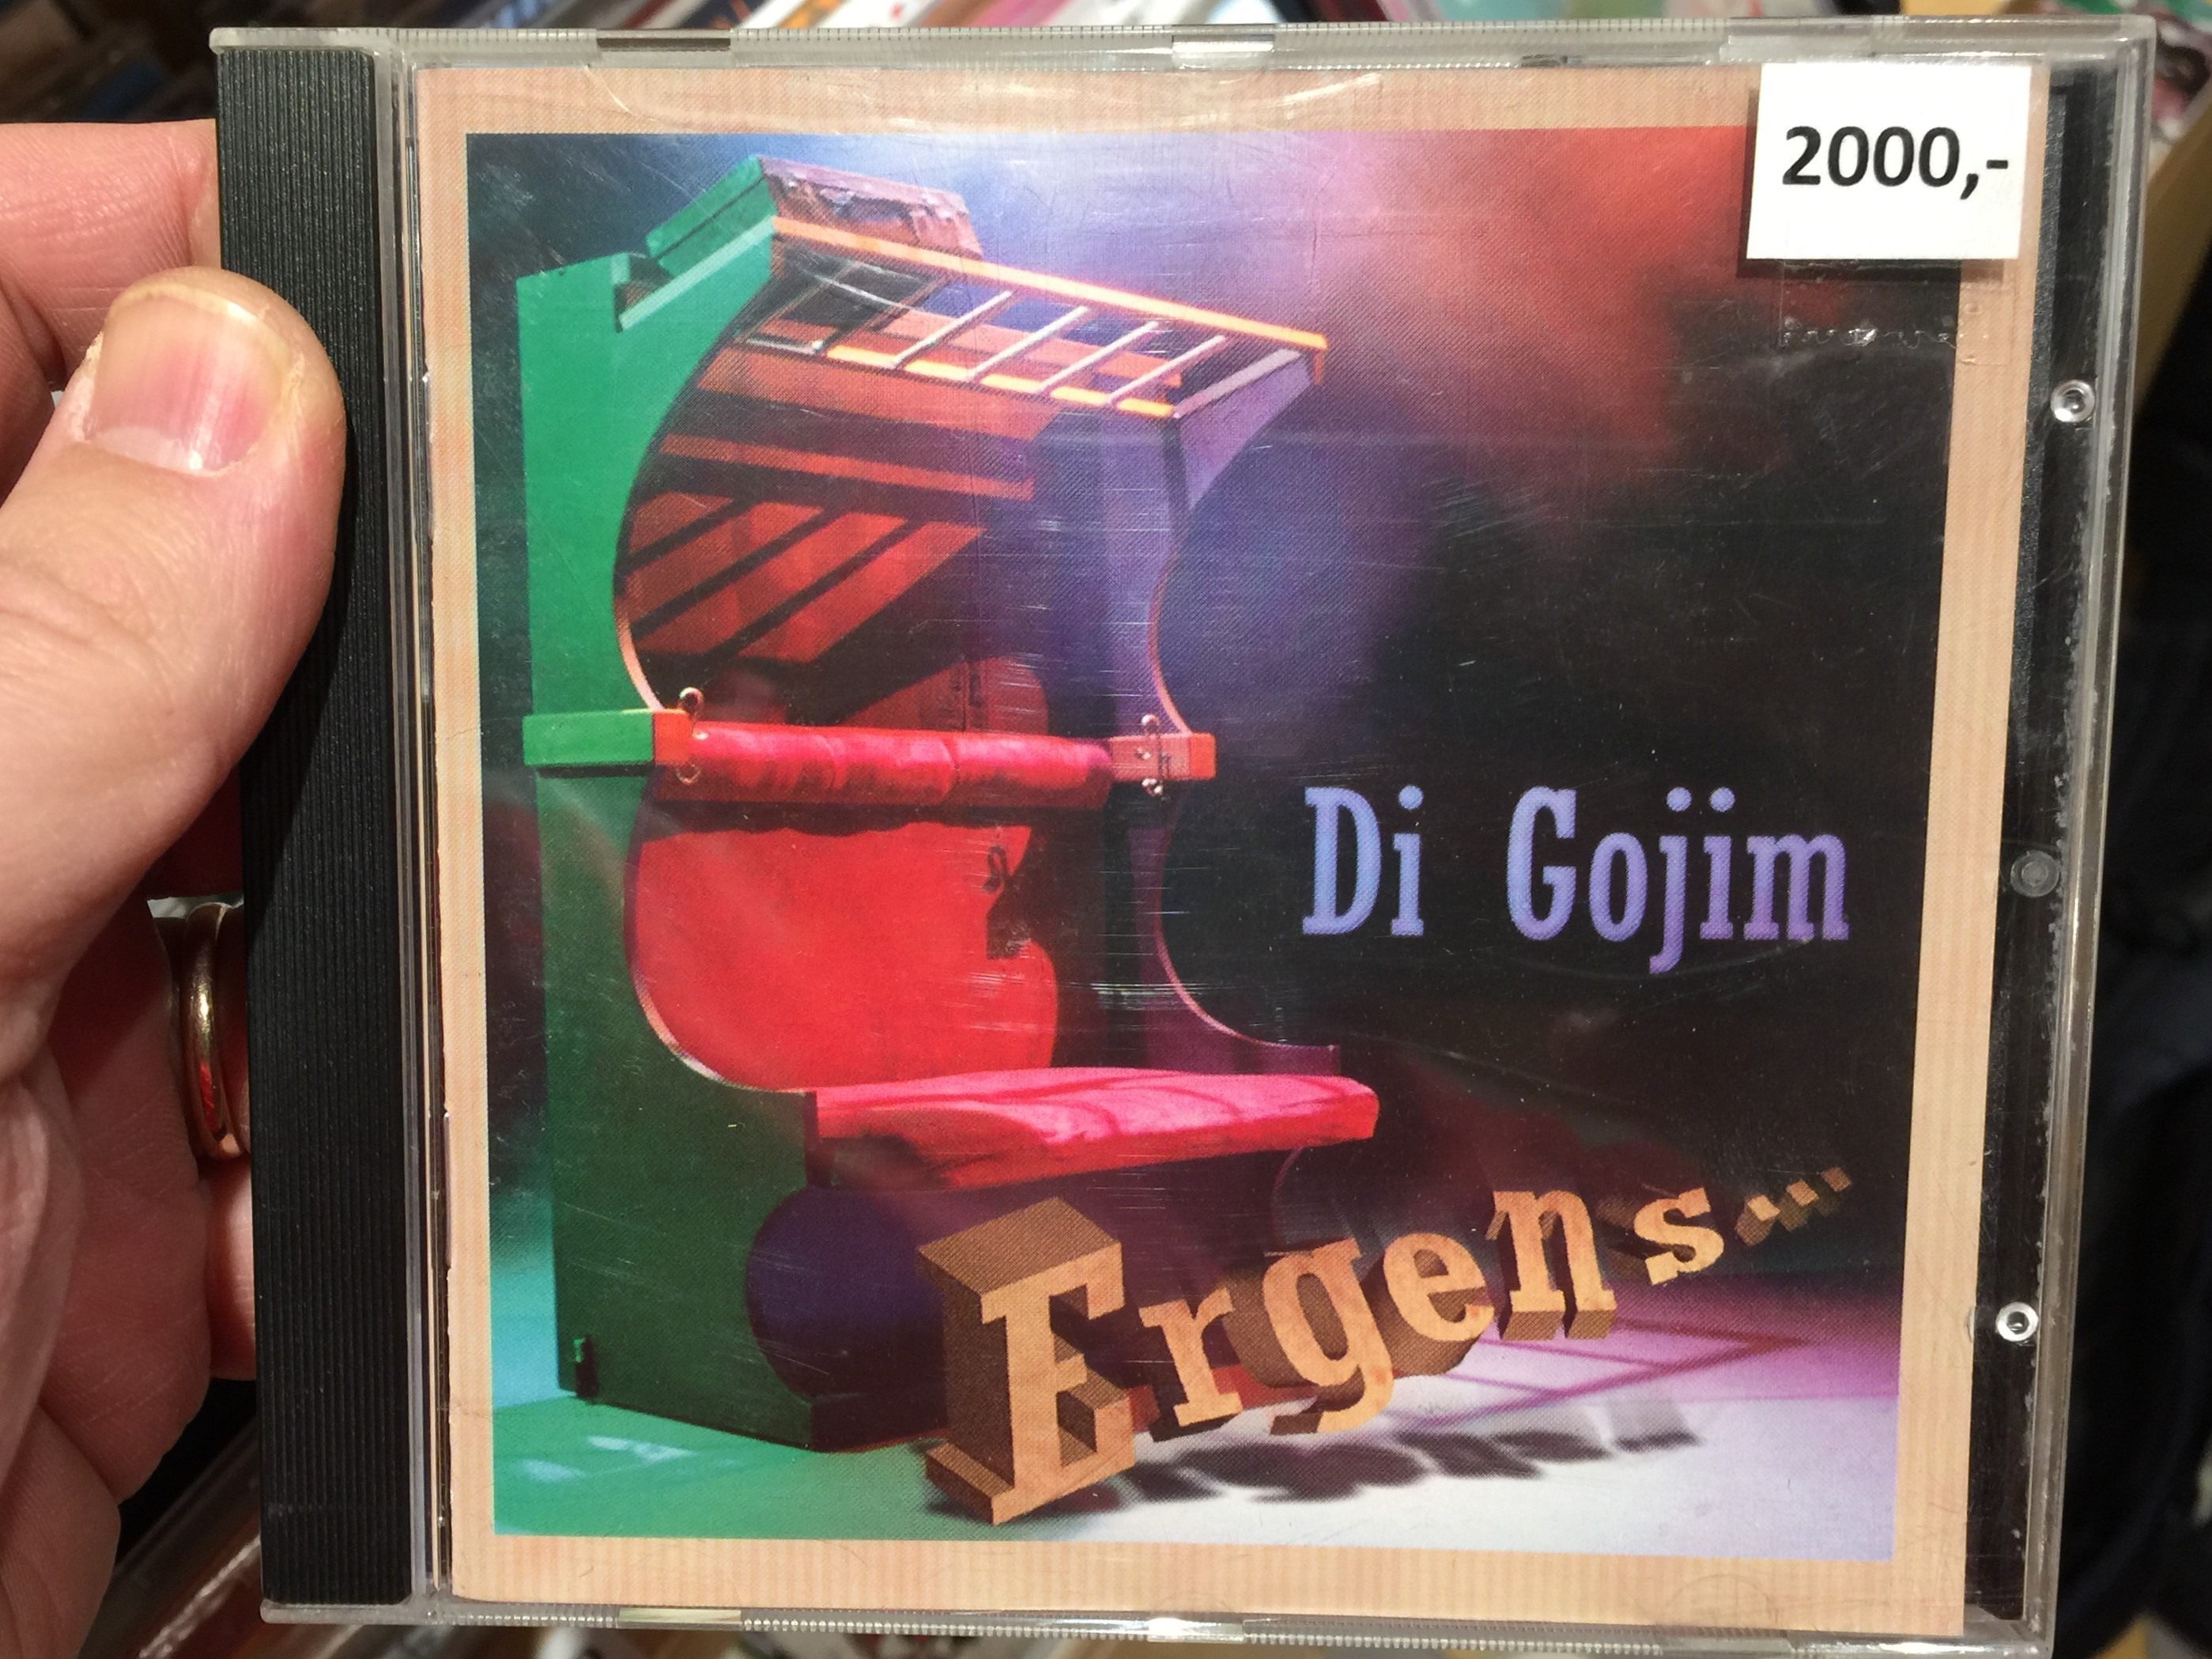 di-gojim-ergens...-syncoop-produkties-audio-cd-5761-cd-254-1-.jpg